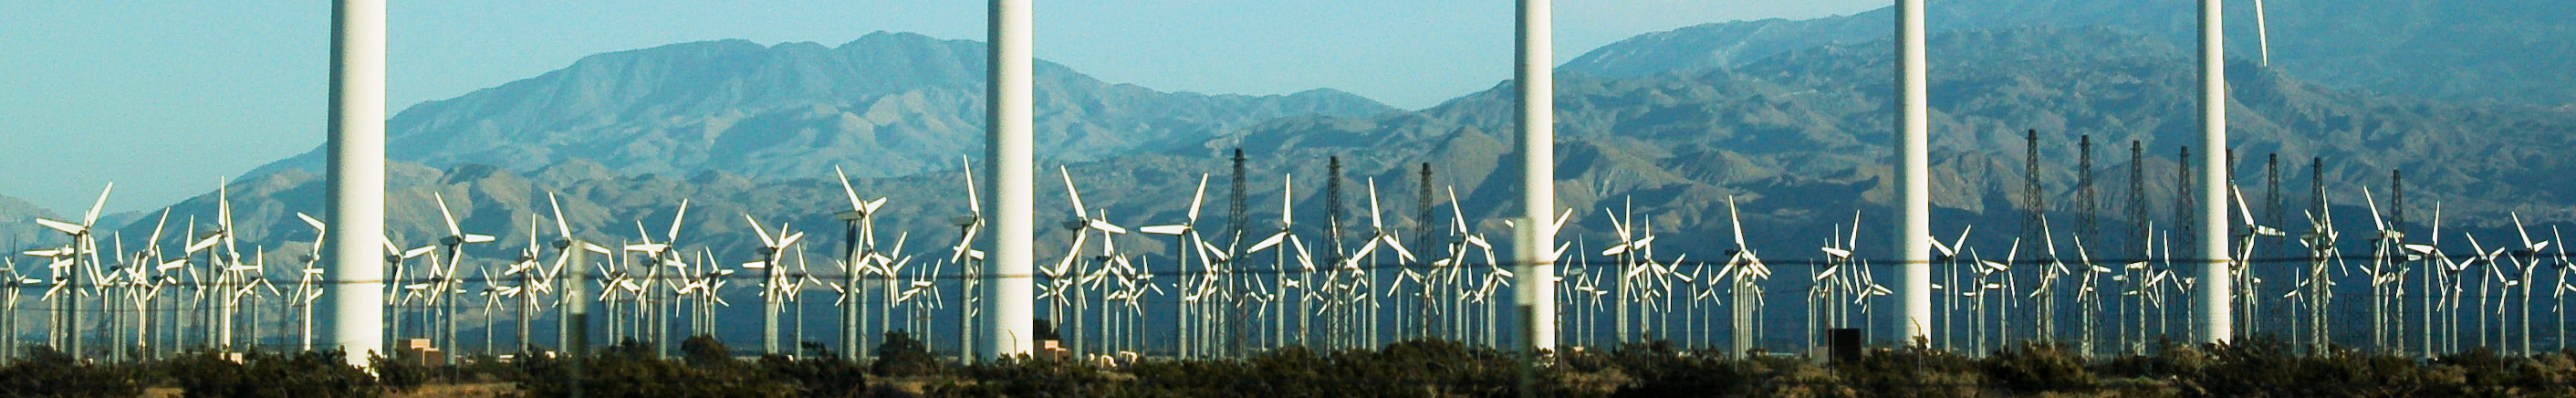 Wind power field